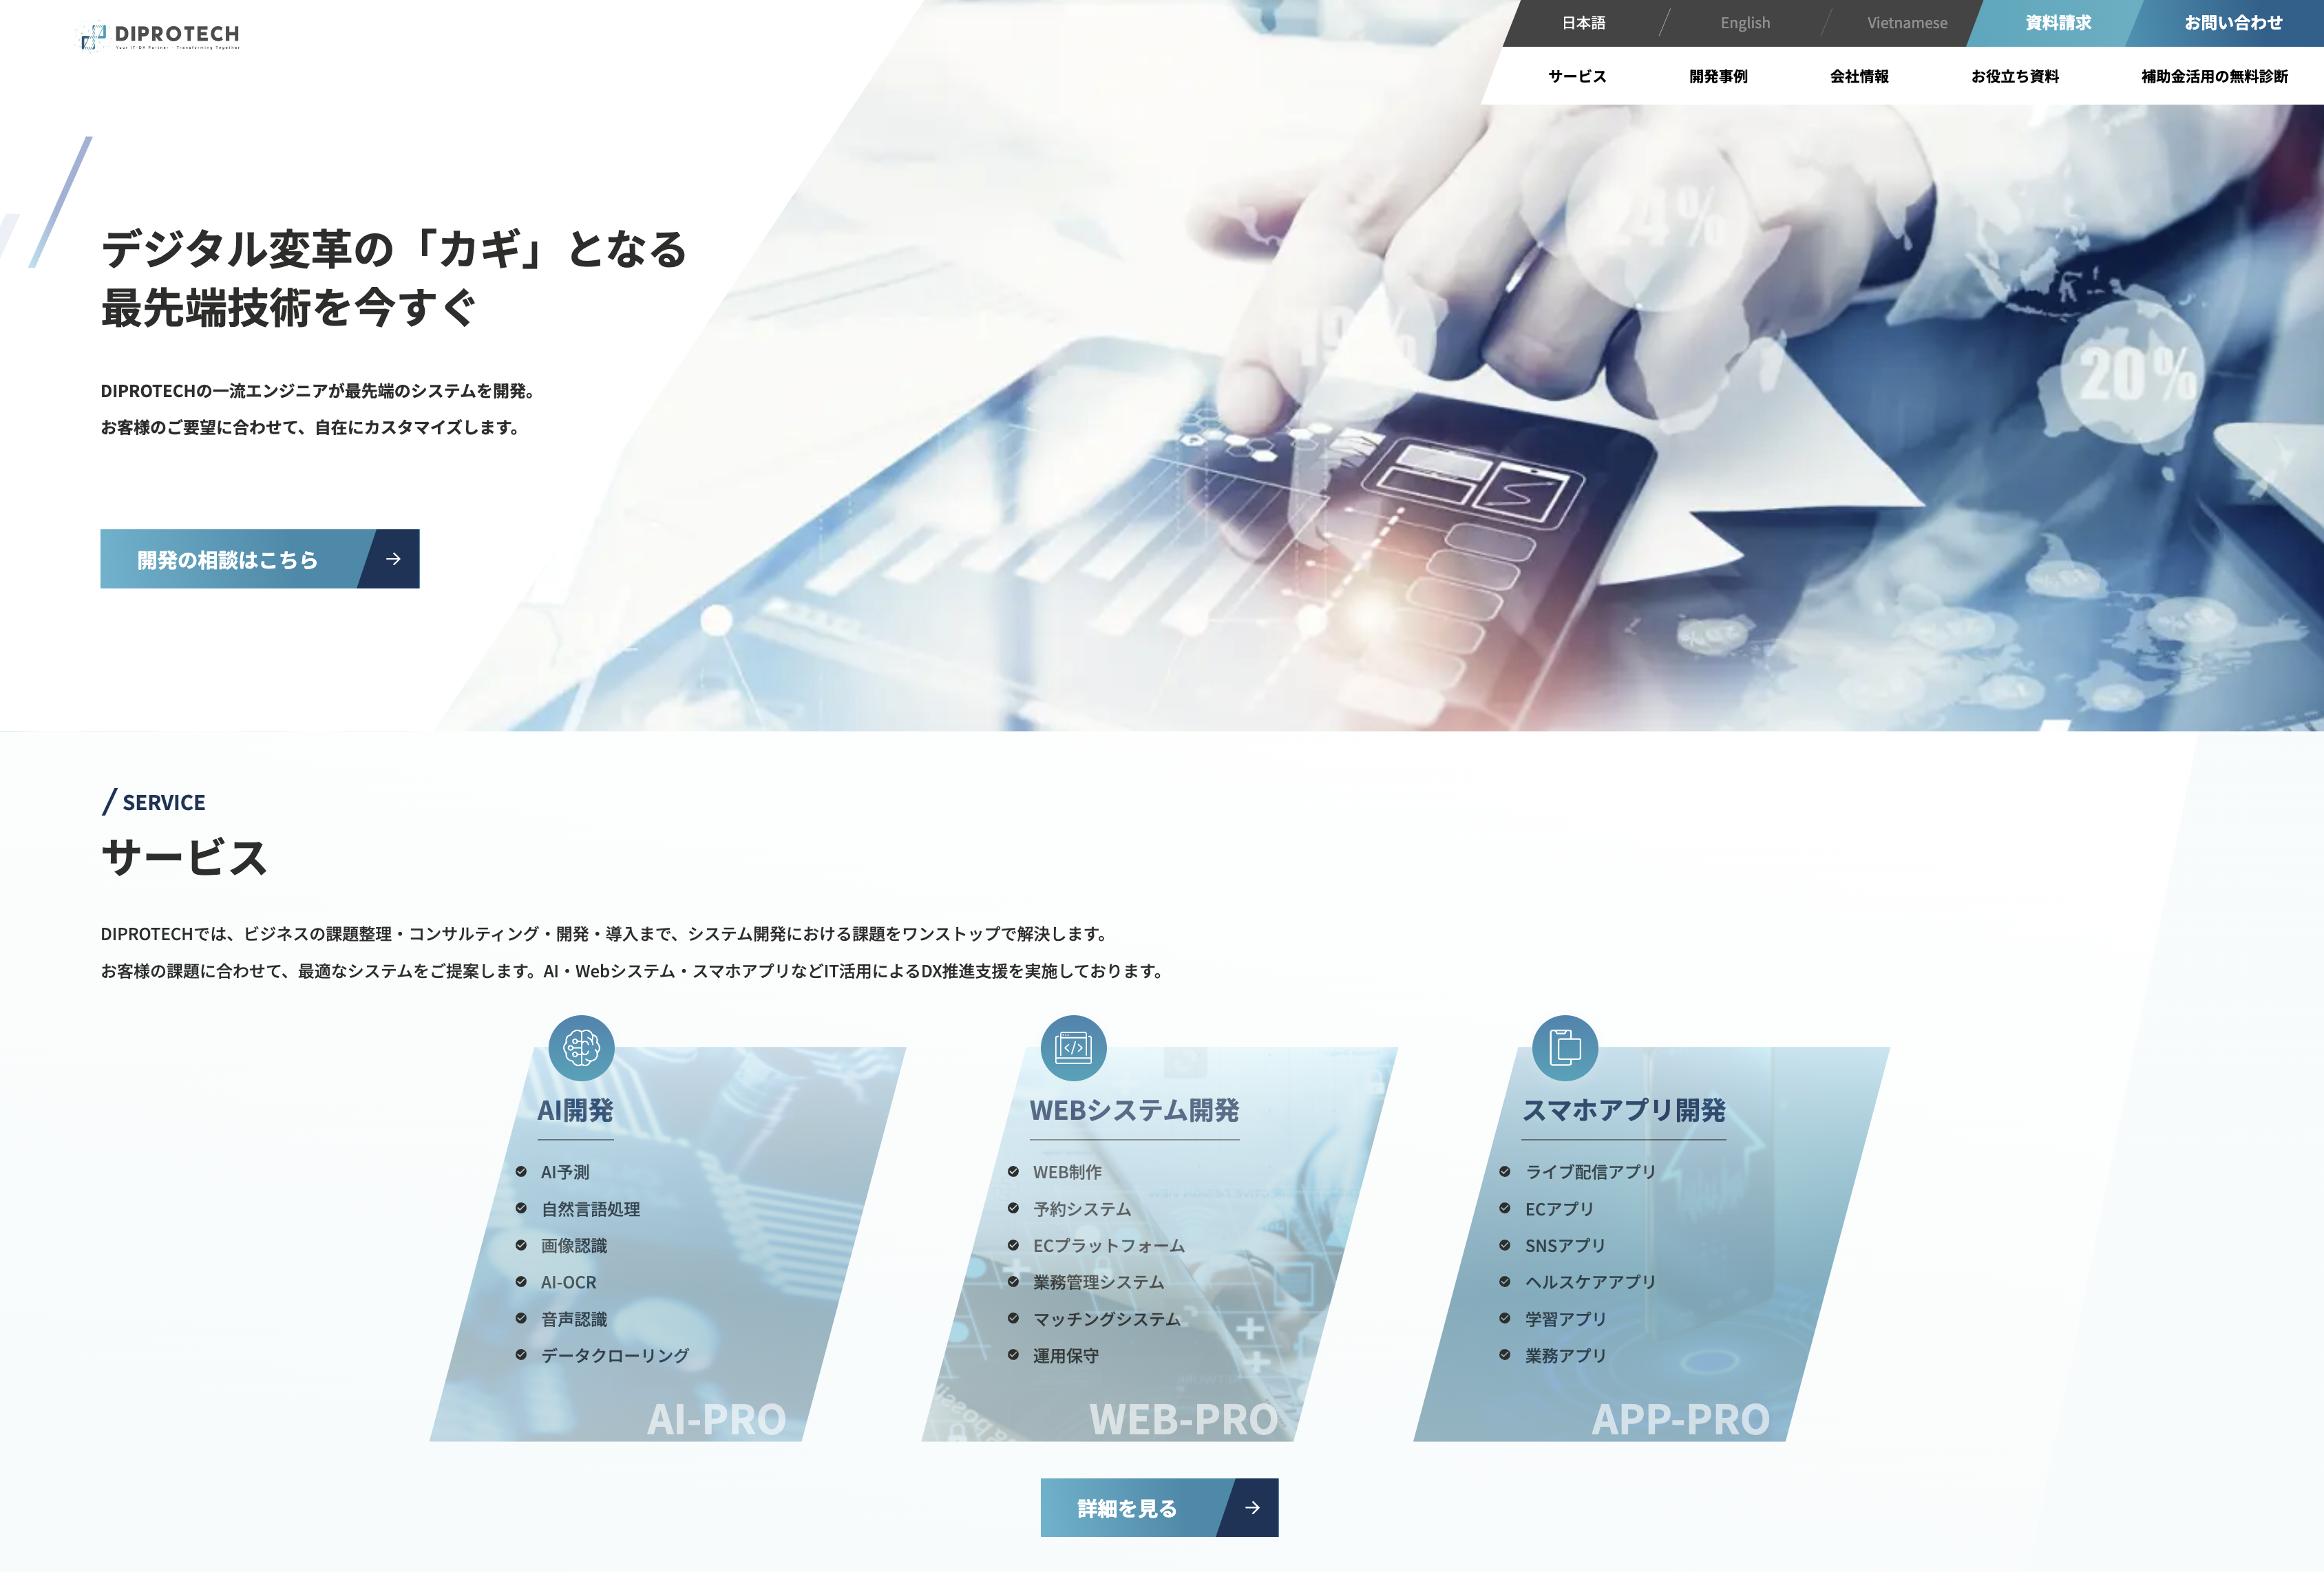 株式会社DIPROの株式会社DIPRO:ECサイト構築サービス